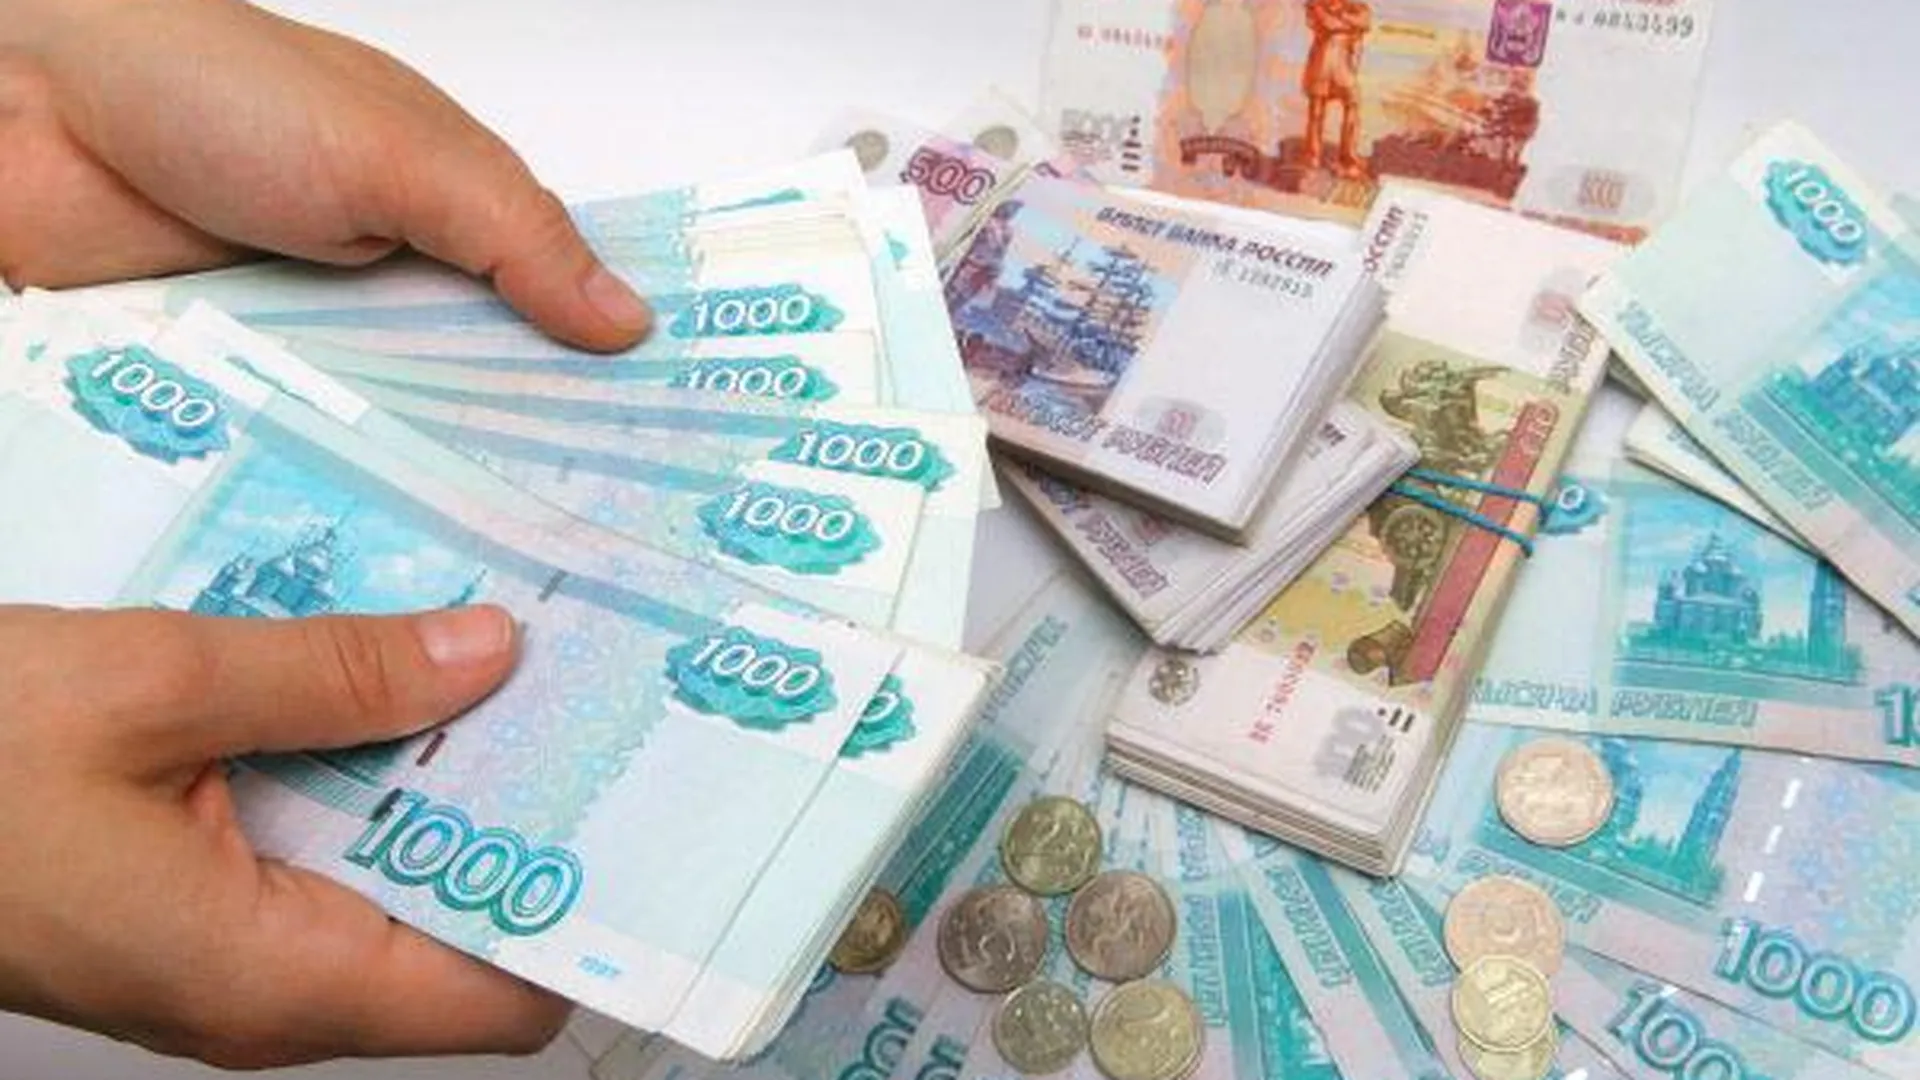 Глава МУП в Коломне потратил на себя 2,2 млн рублей из бюджета города